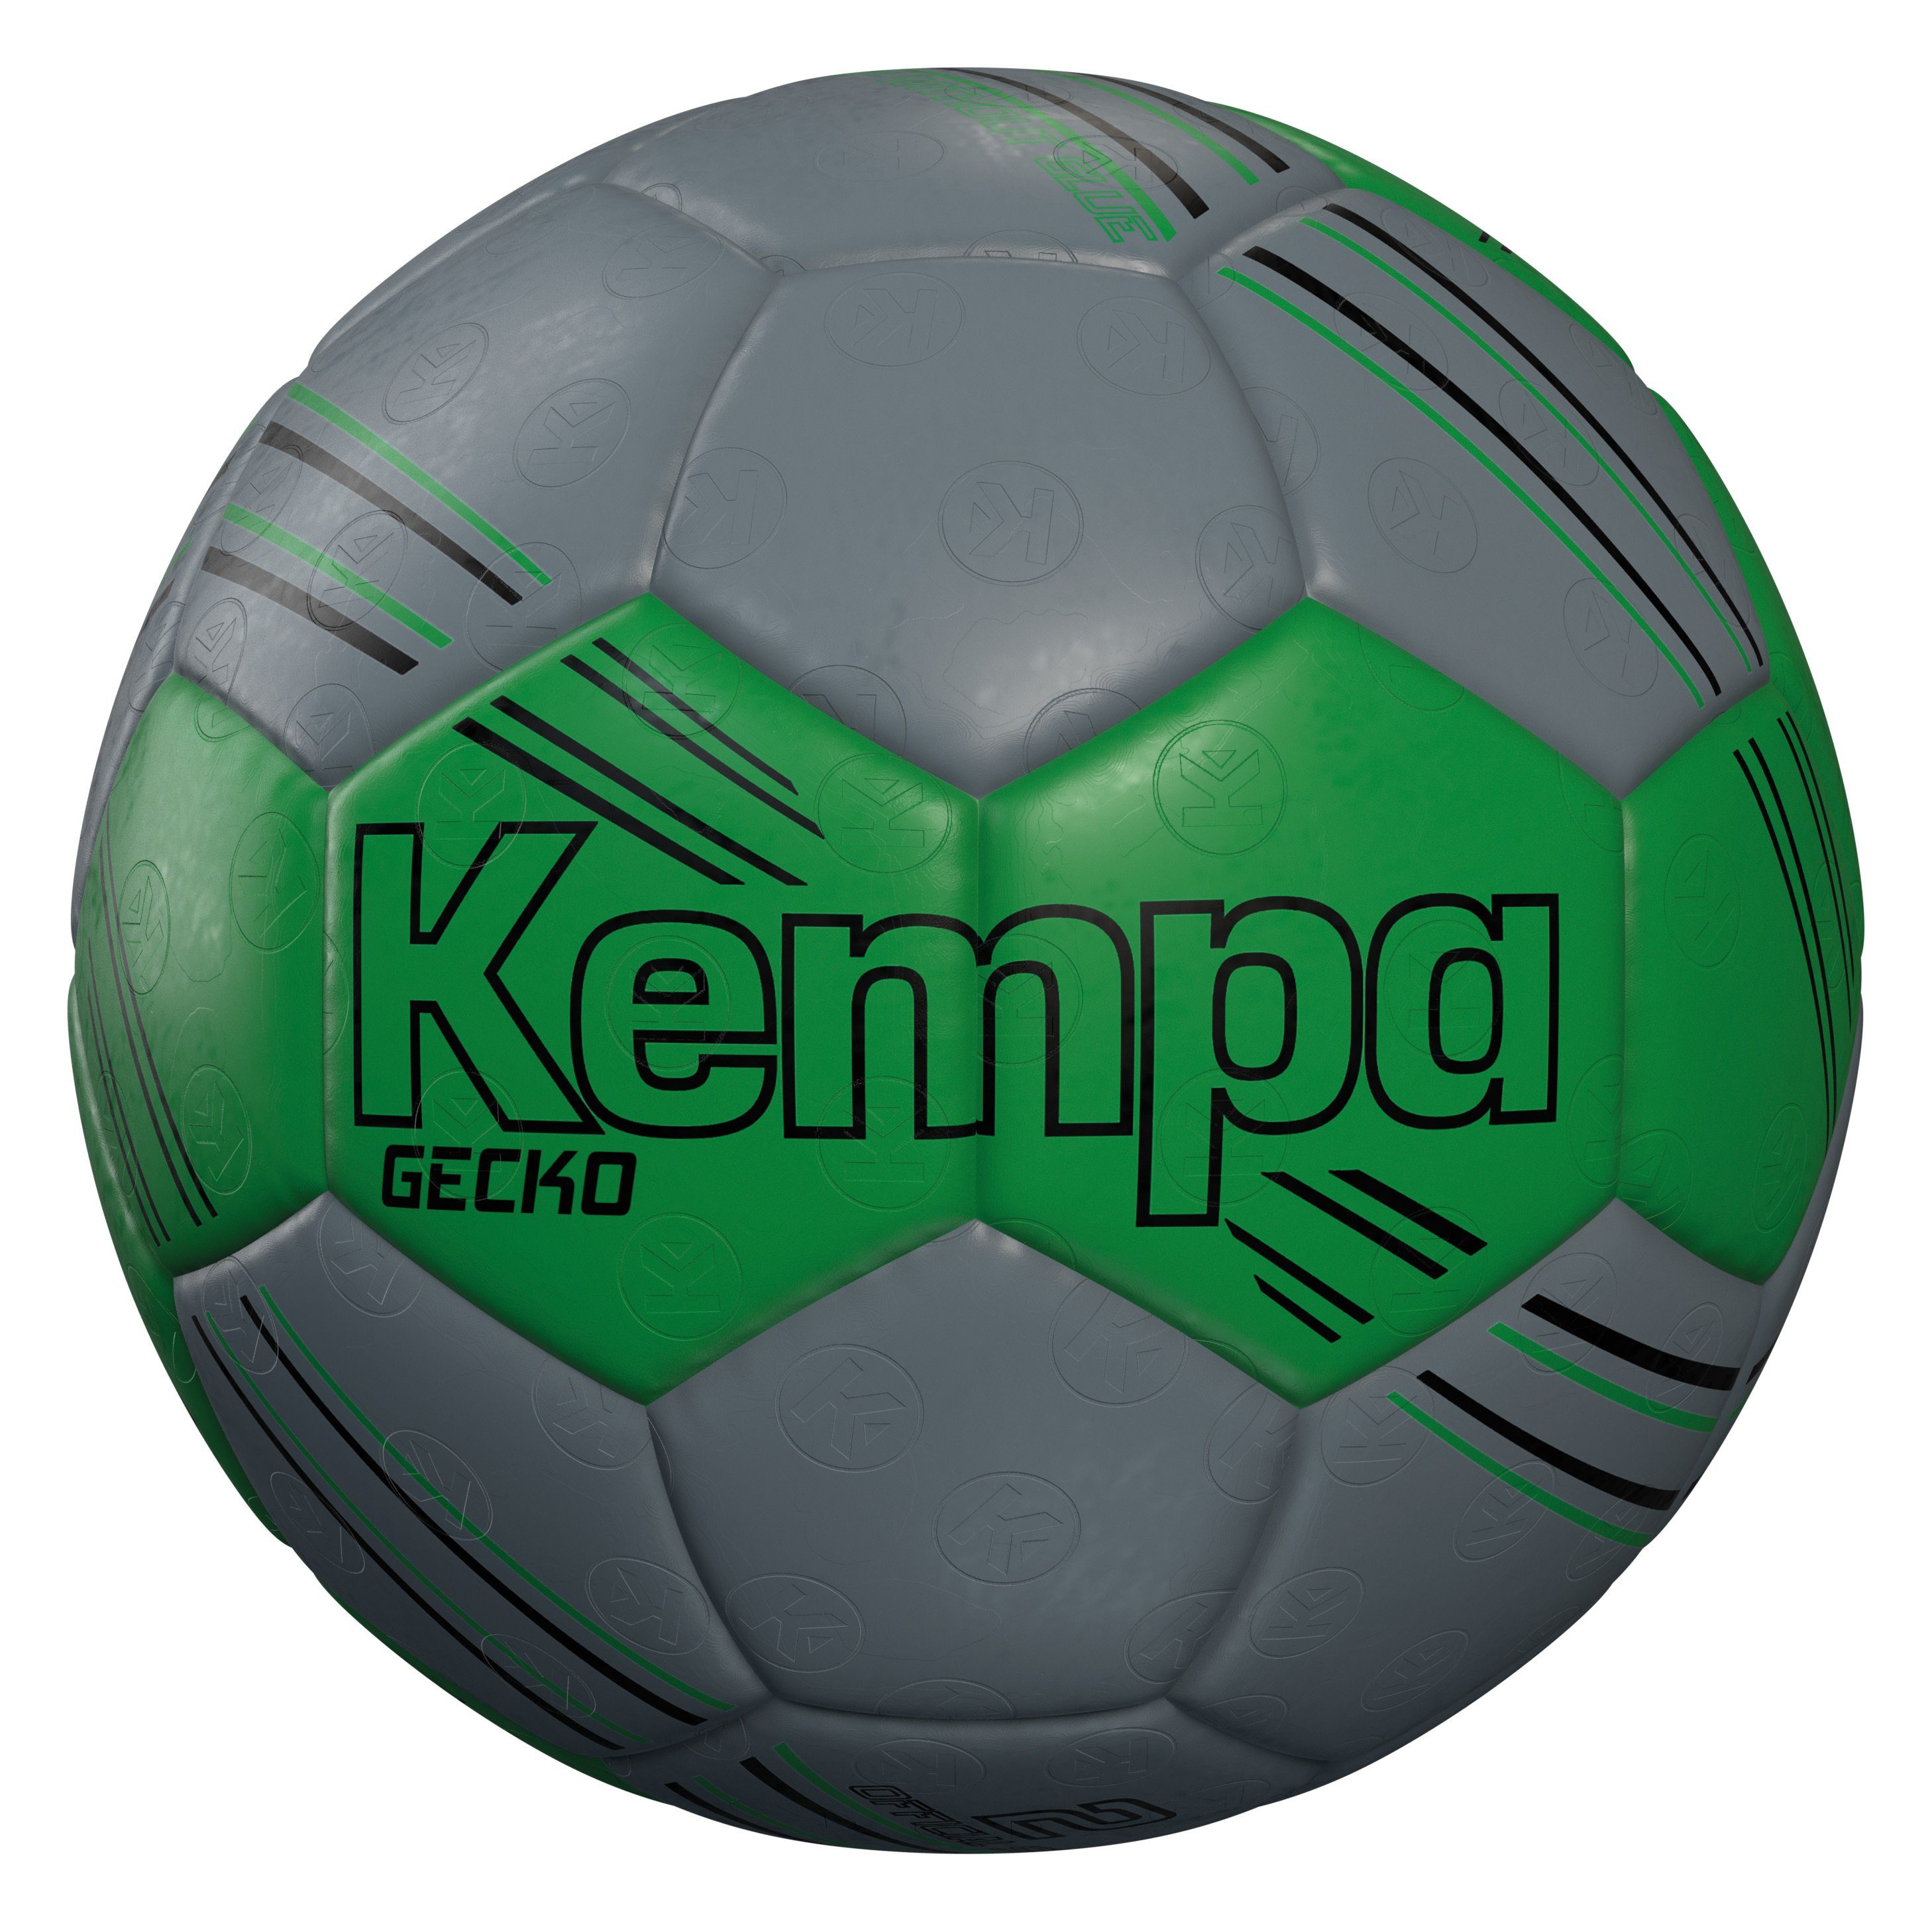 Kempa Handball Kempa Handball GECKO FLUO GRÜN/ANTHRA